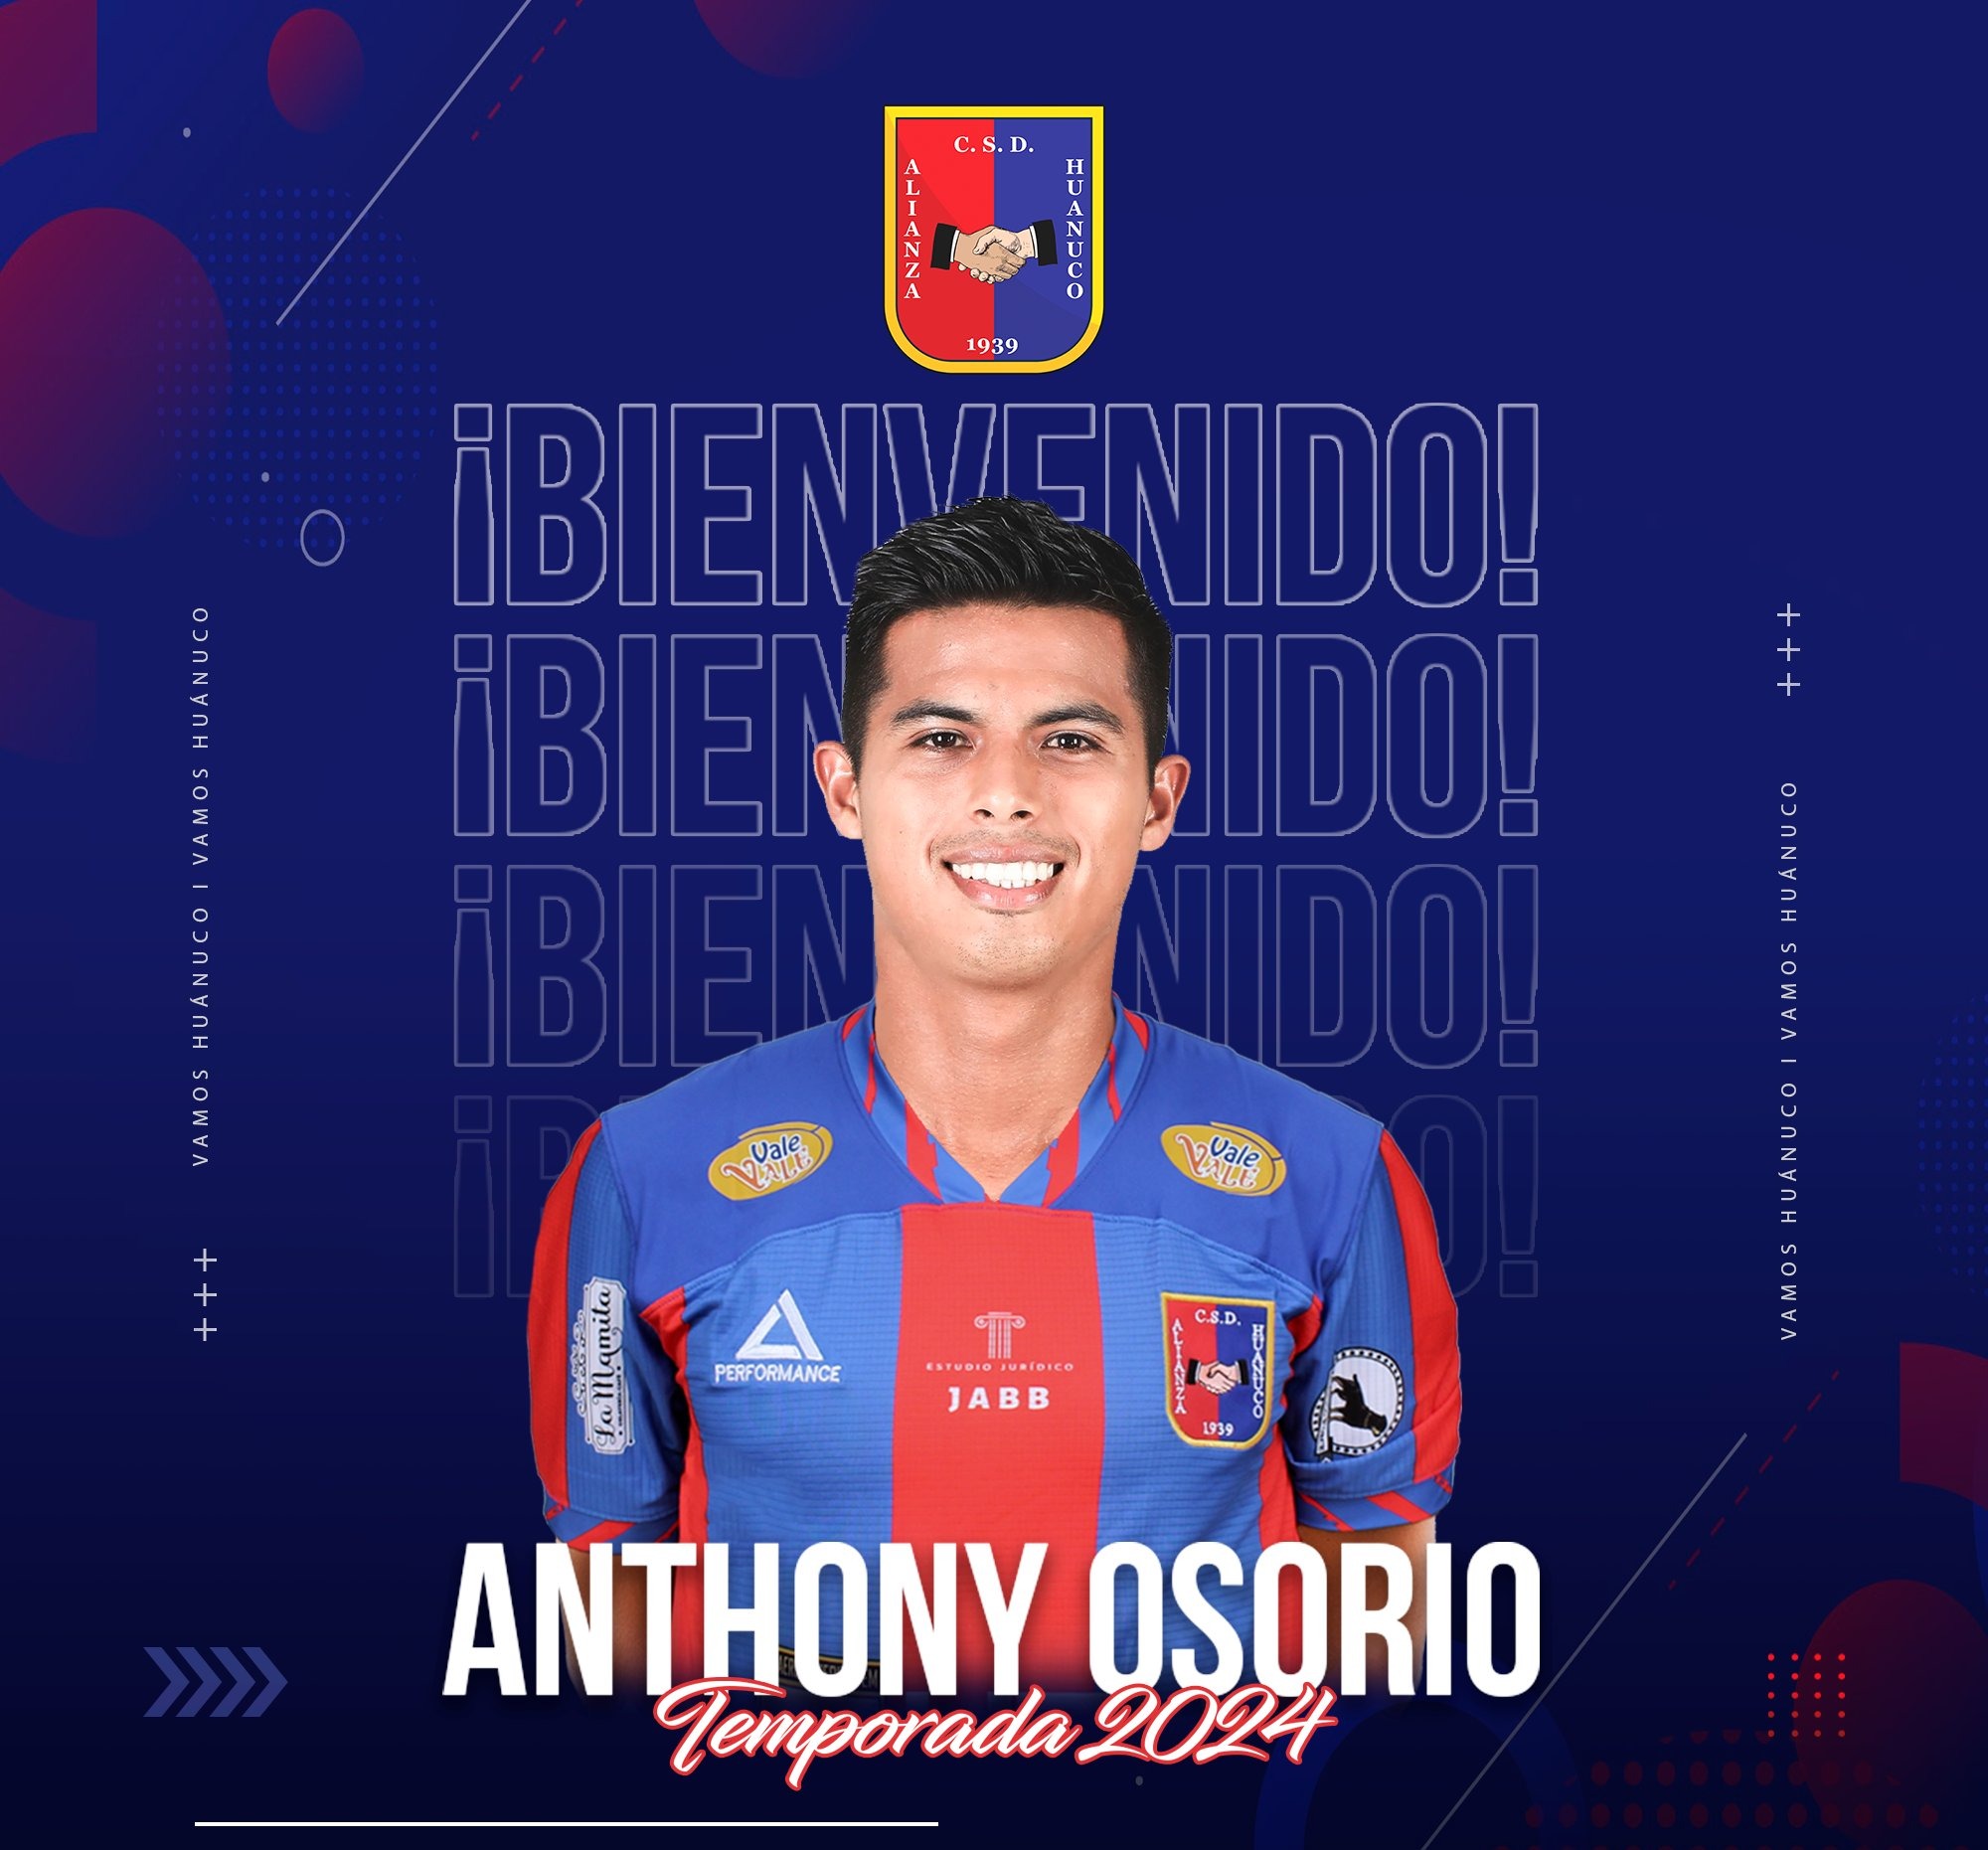 Anthony Osorio es nuevo jugador de Alianza Universidad. | Fuente: @AlianzaUDH